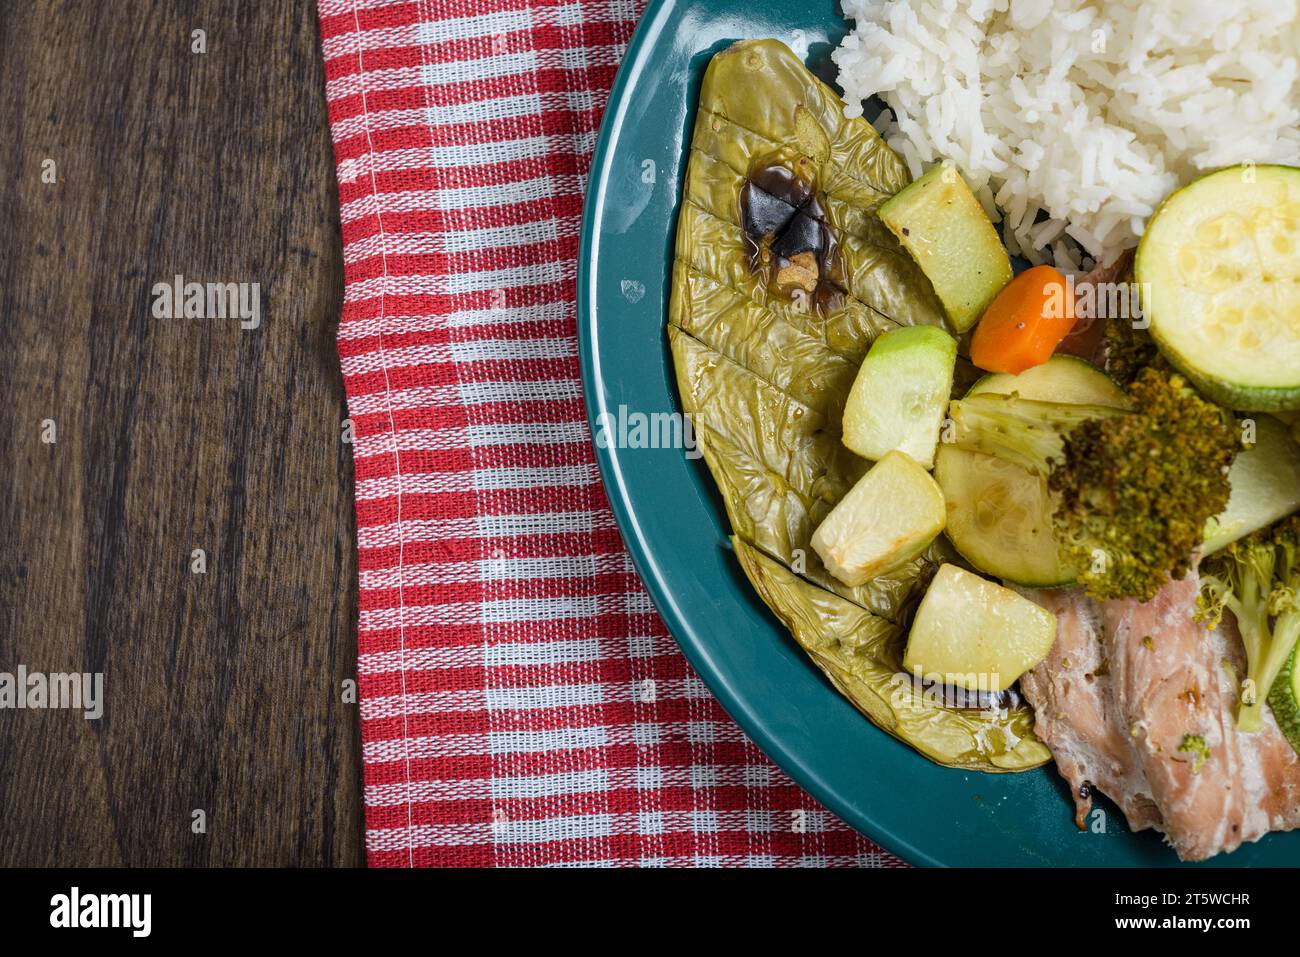 Filets de poisson, légumes et cactus (nopal) cuits avec du riz blanc sur une table en bois. Nourriture saine. Banque D'Images